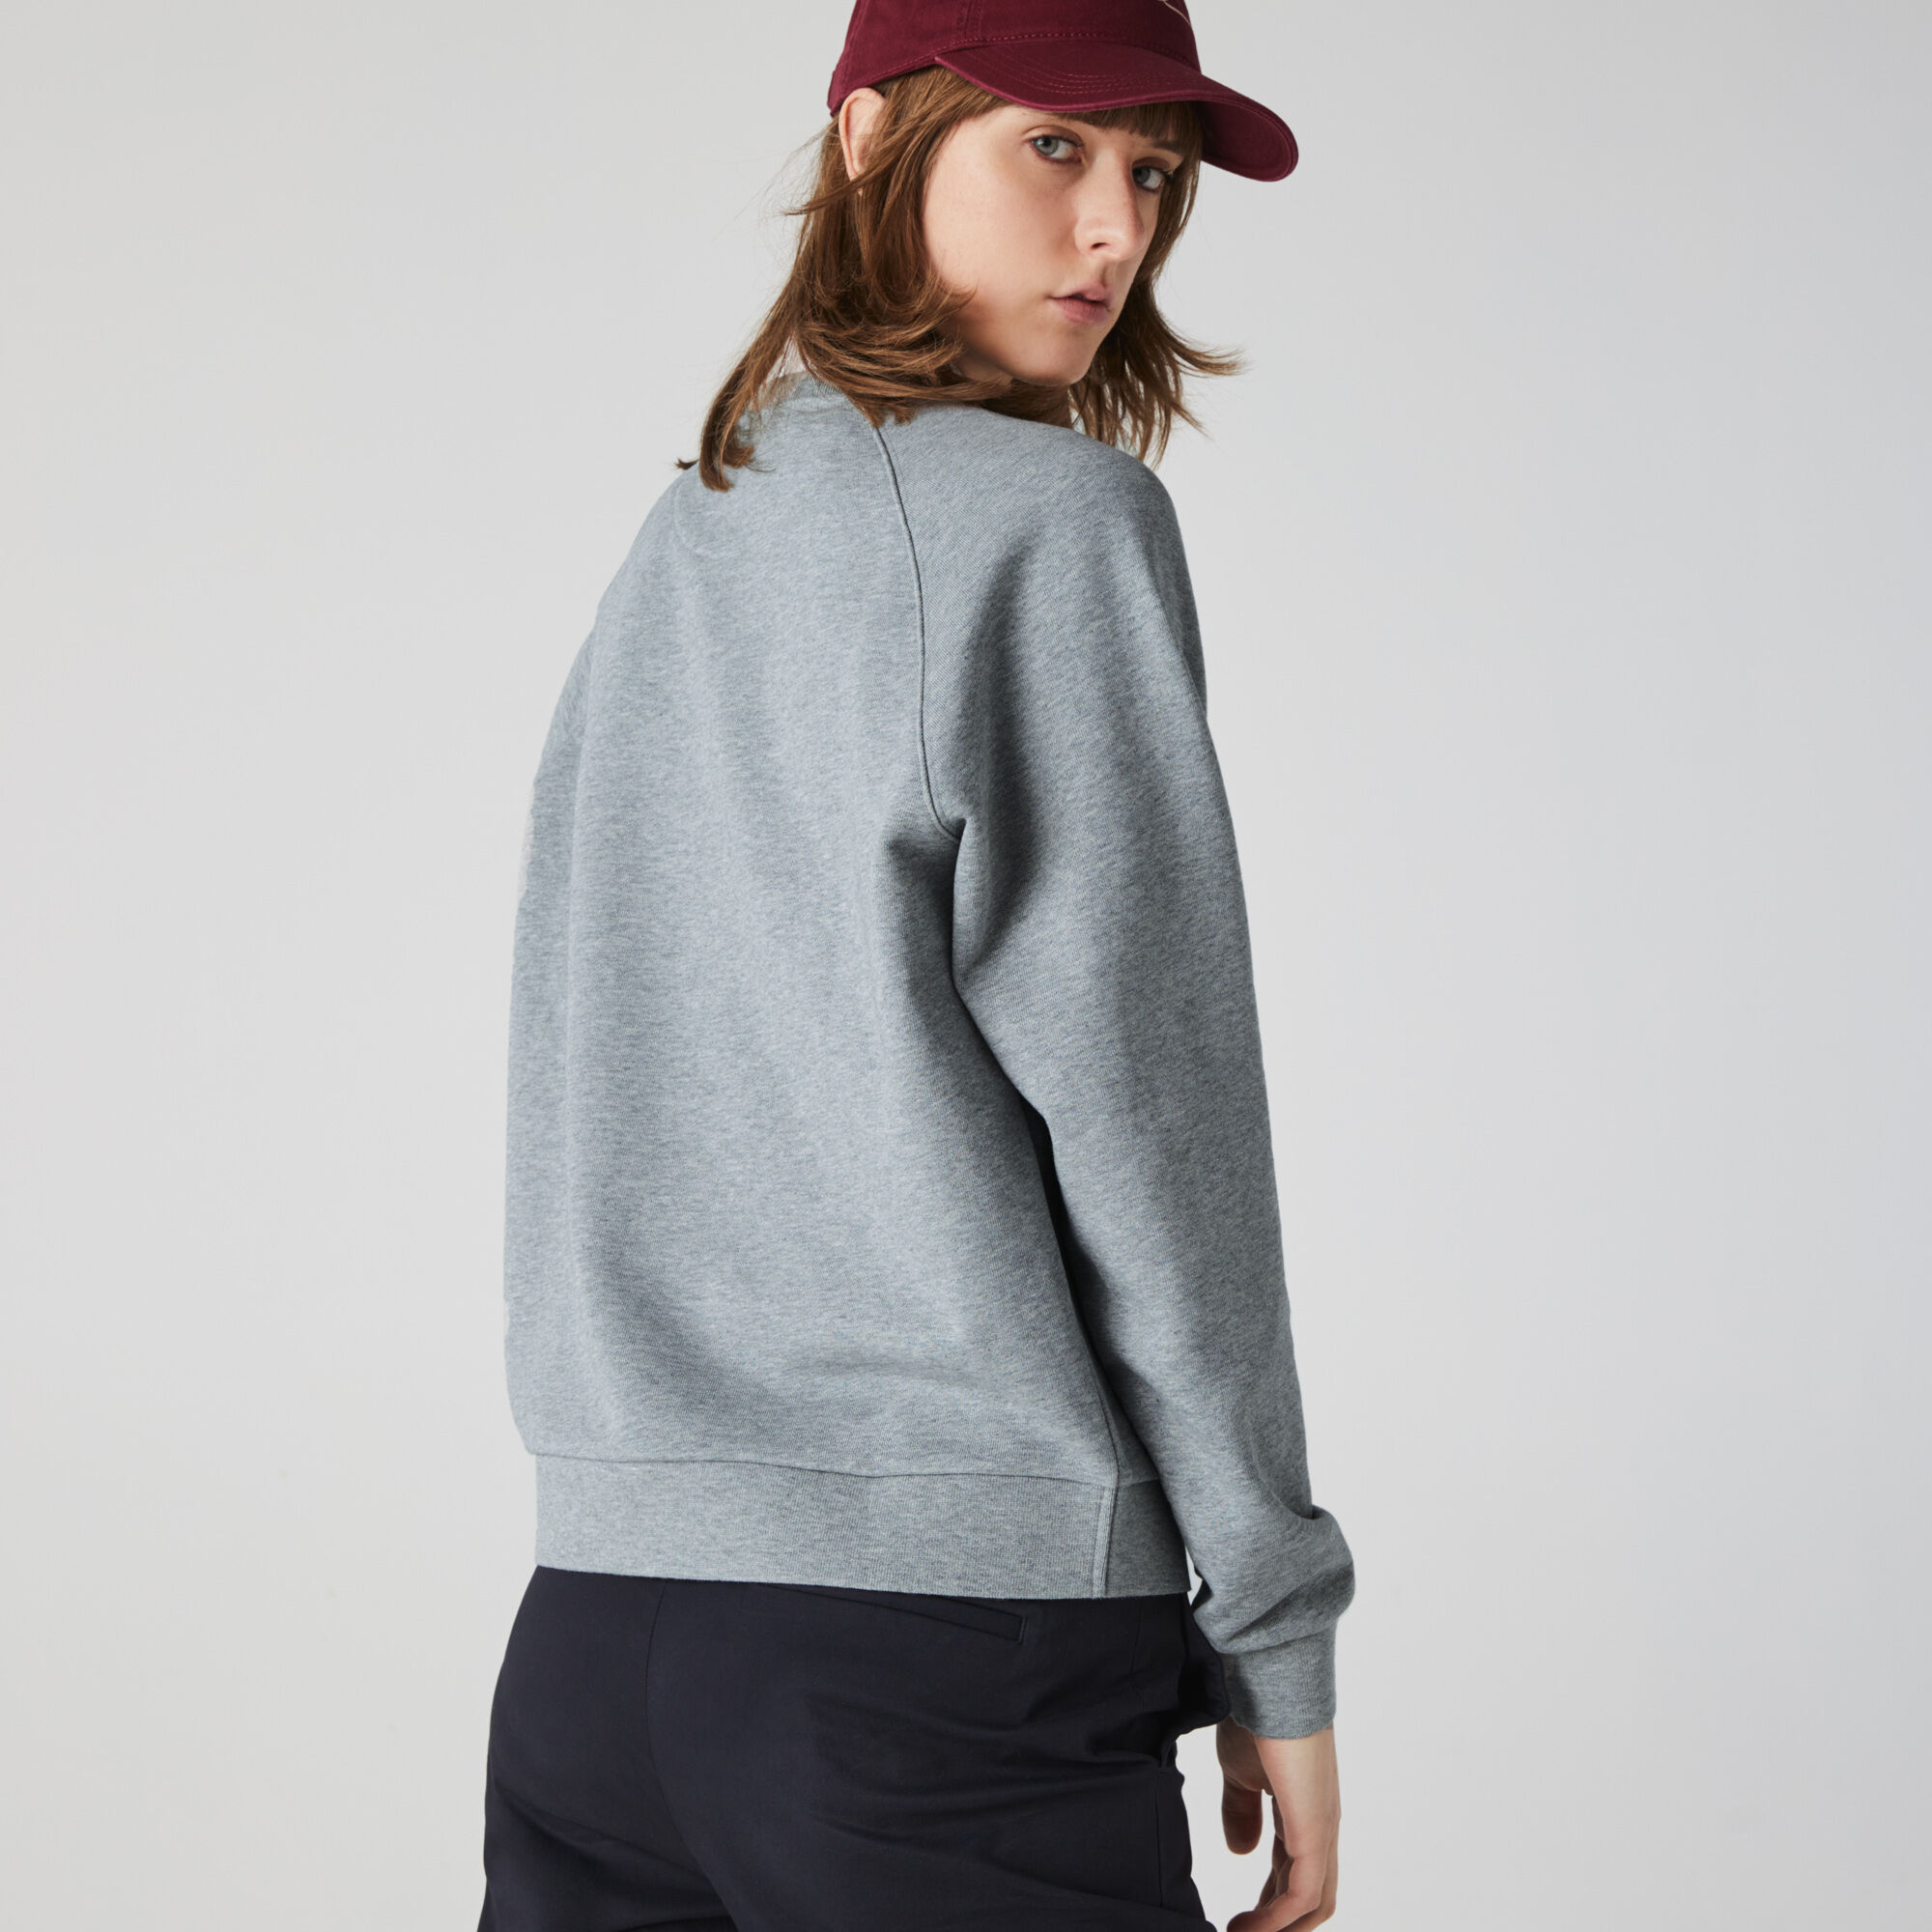 Women’s Crew Neck Vintage Print Lightweight Cotton Fleece Sweatshirt